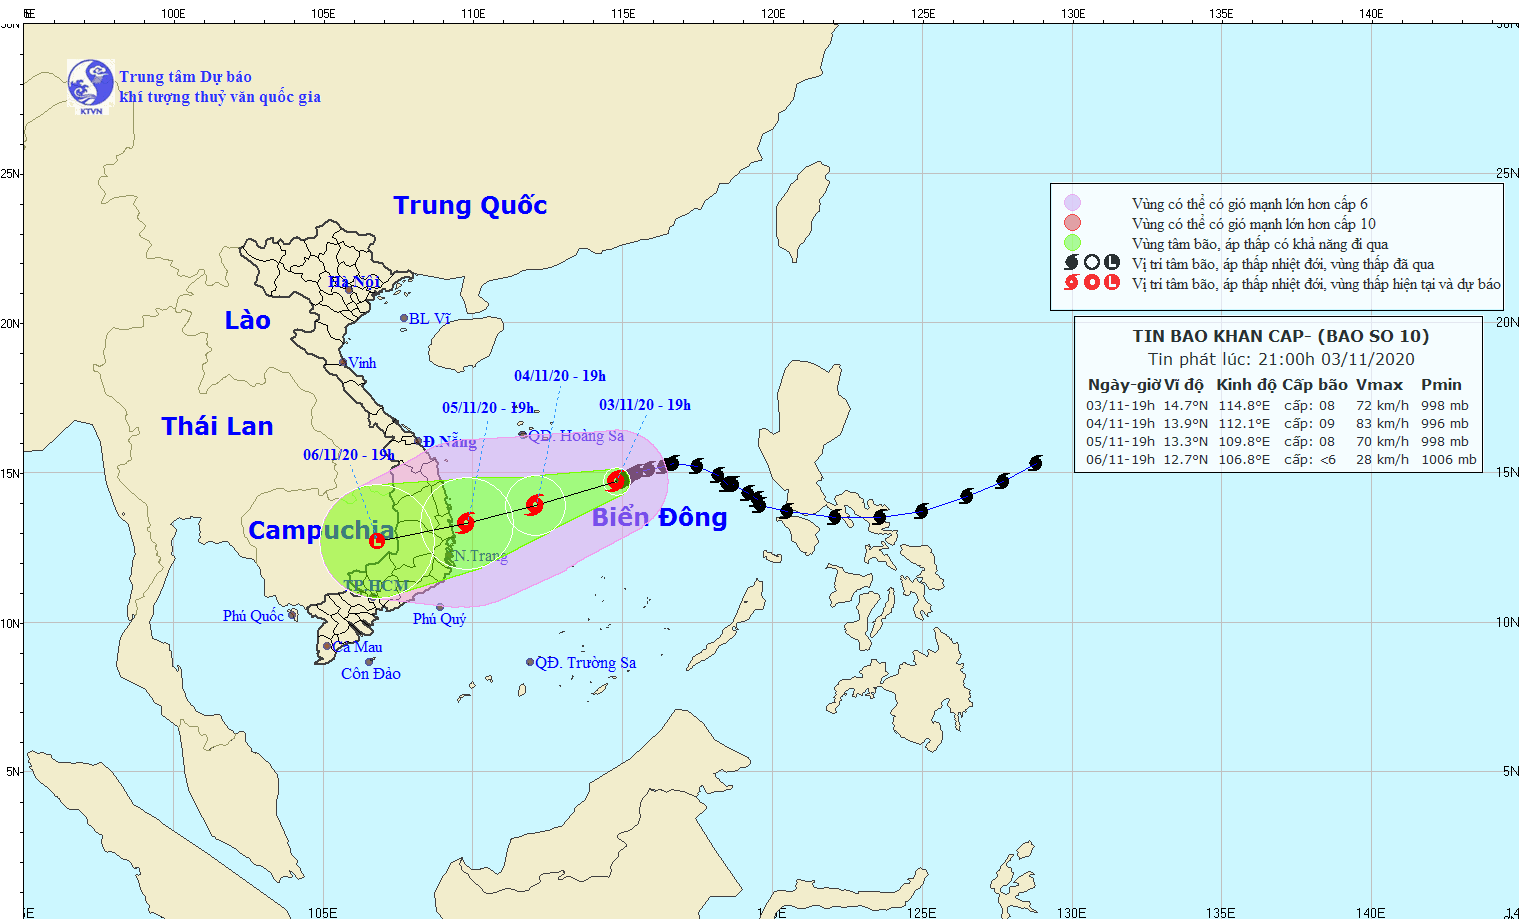 Cập nhật cơn bão số 10: Bão cách Hoàng Sa 350km, gió giật cấp 10